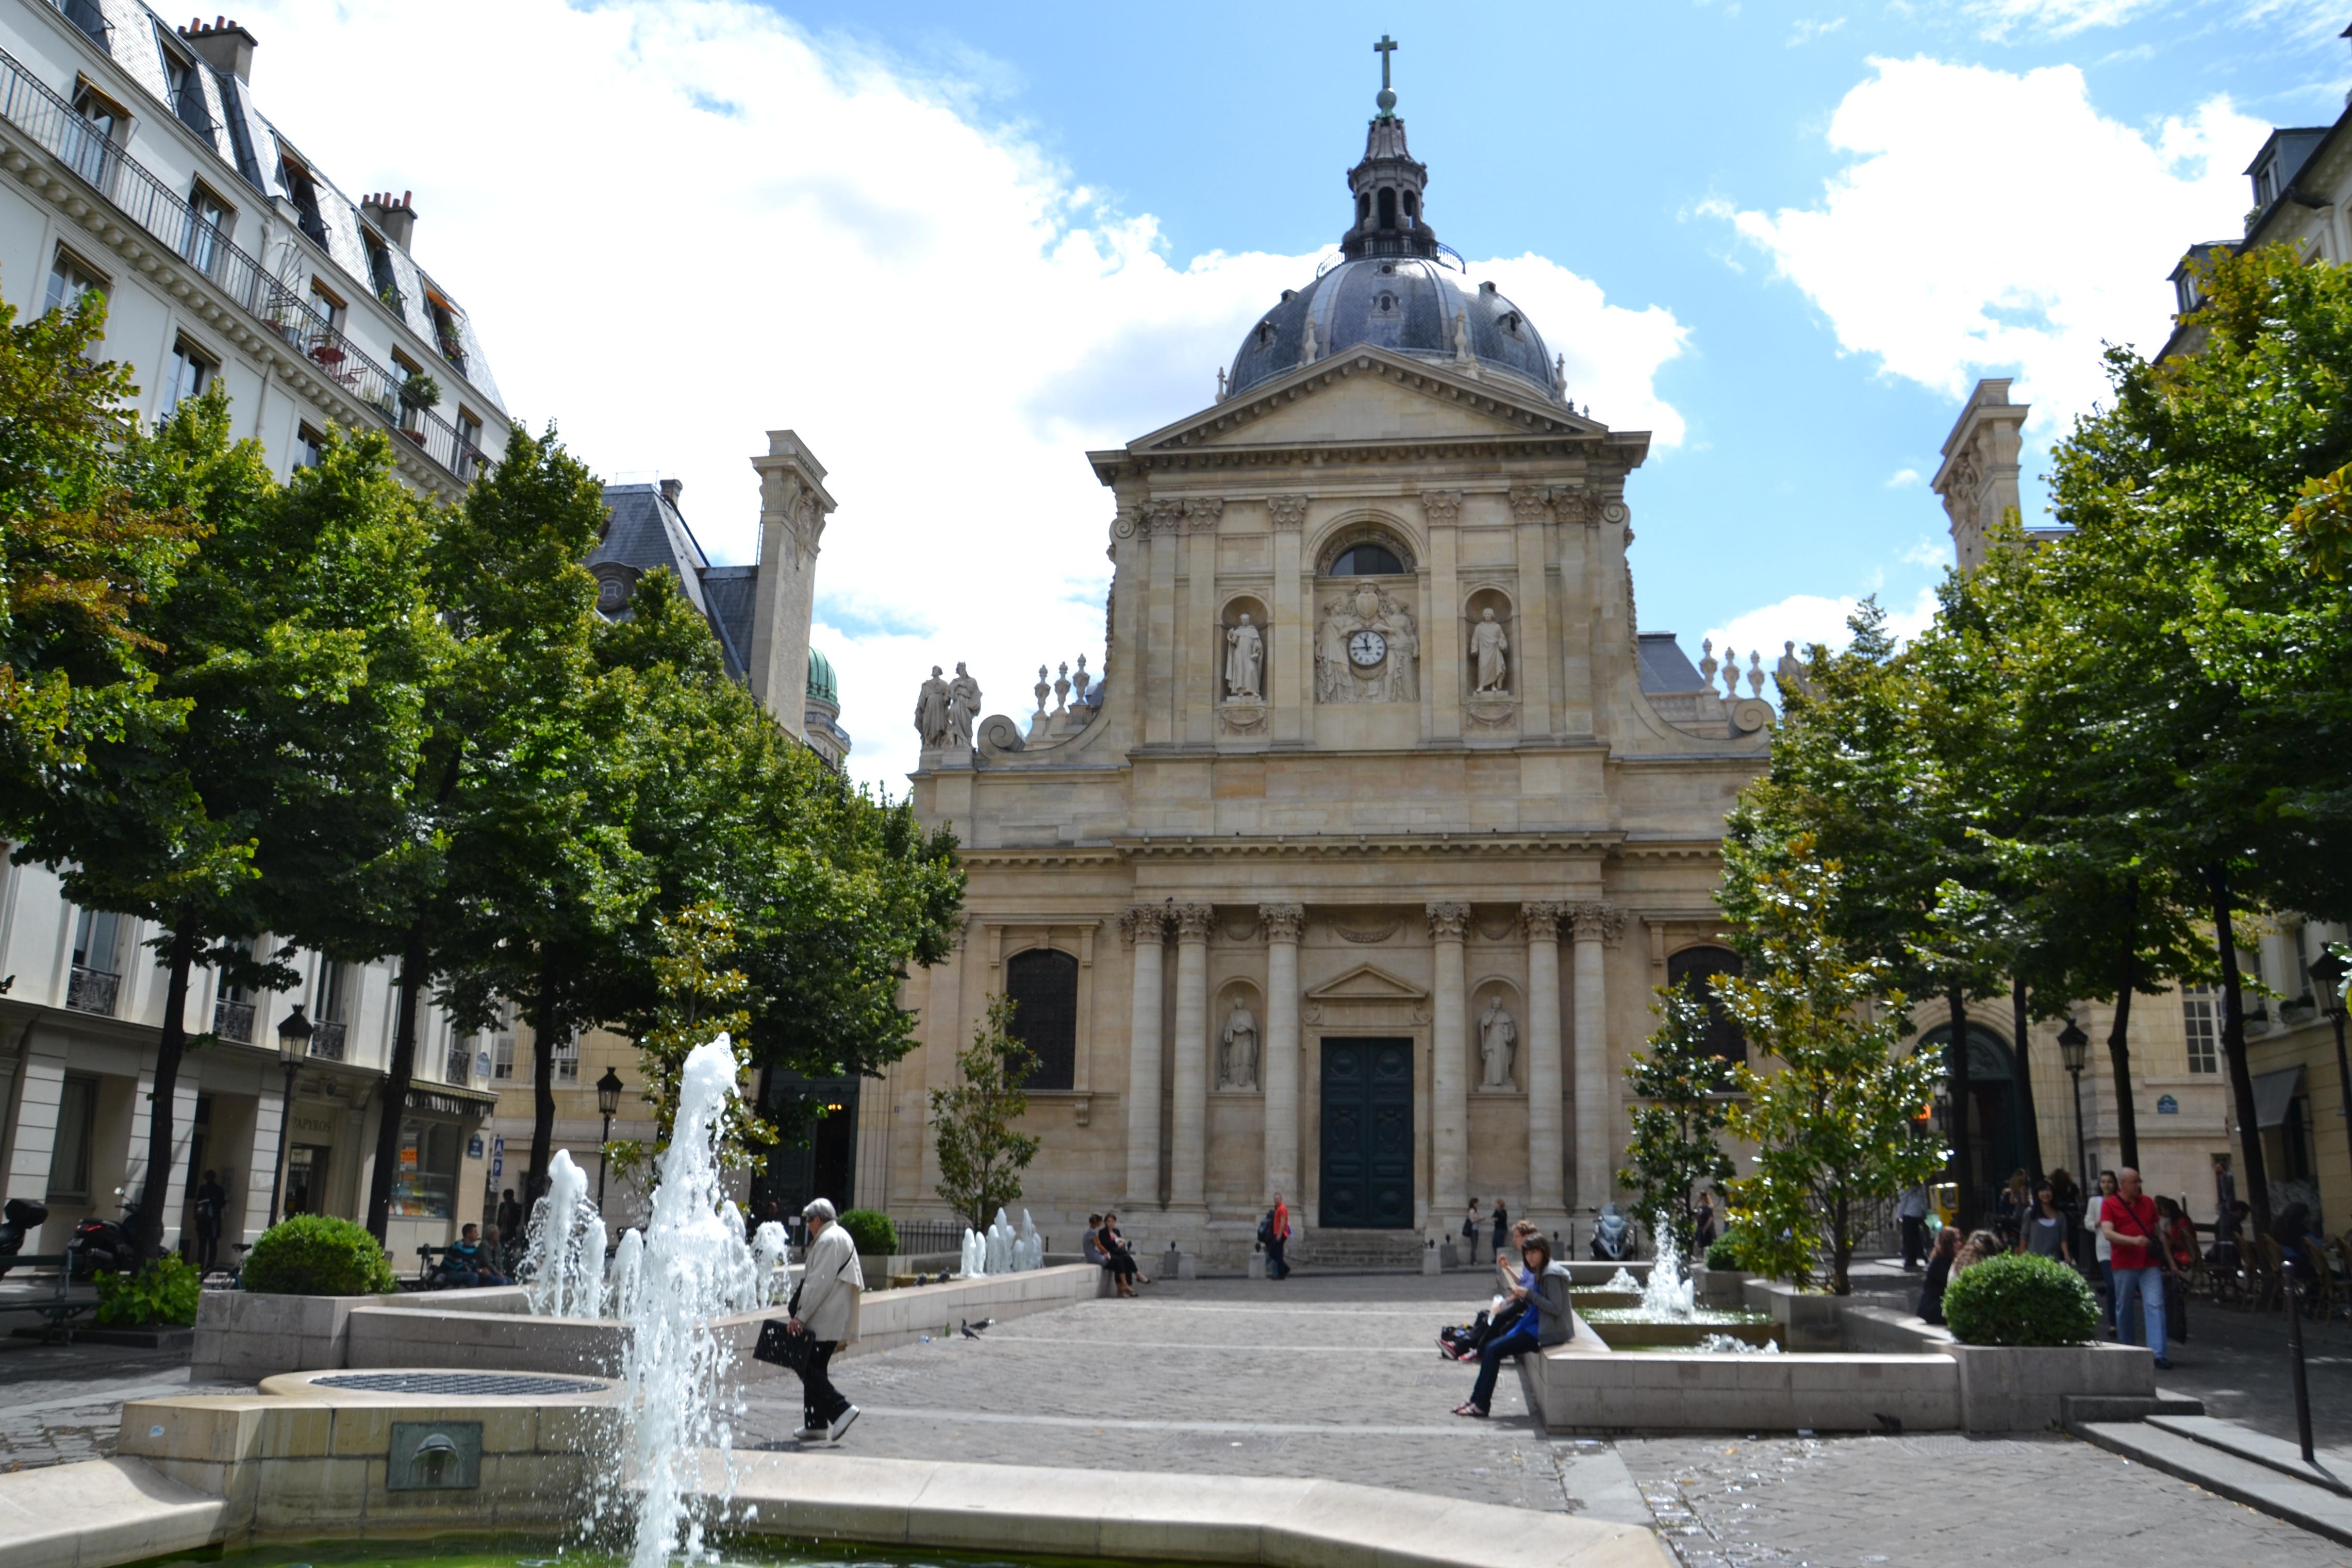 Foto: La Sorbonne - París (Île-de-France), Francia